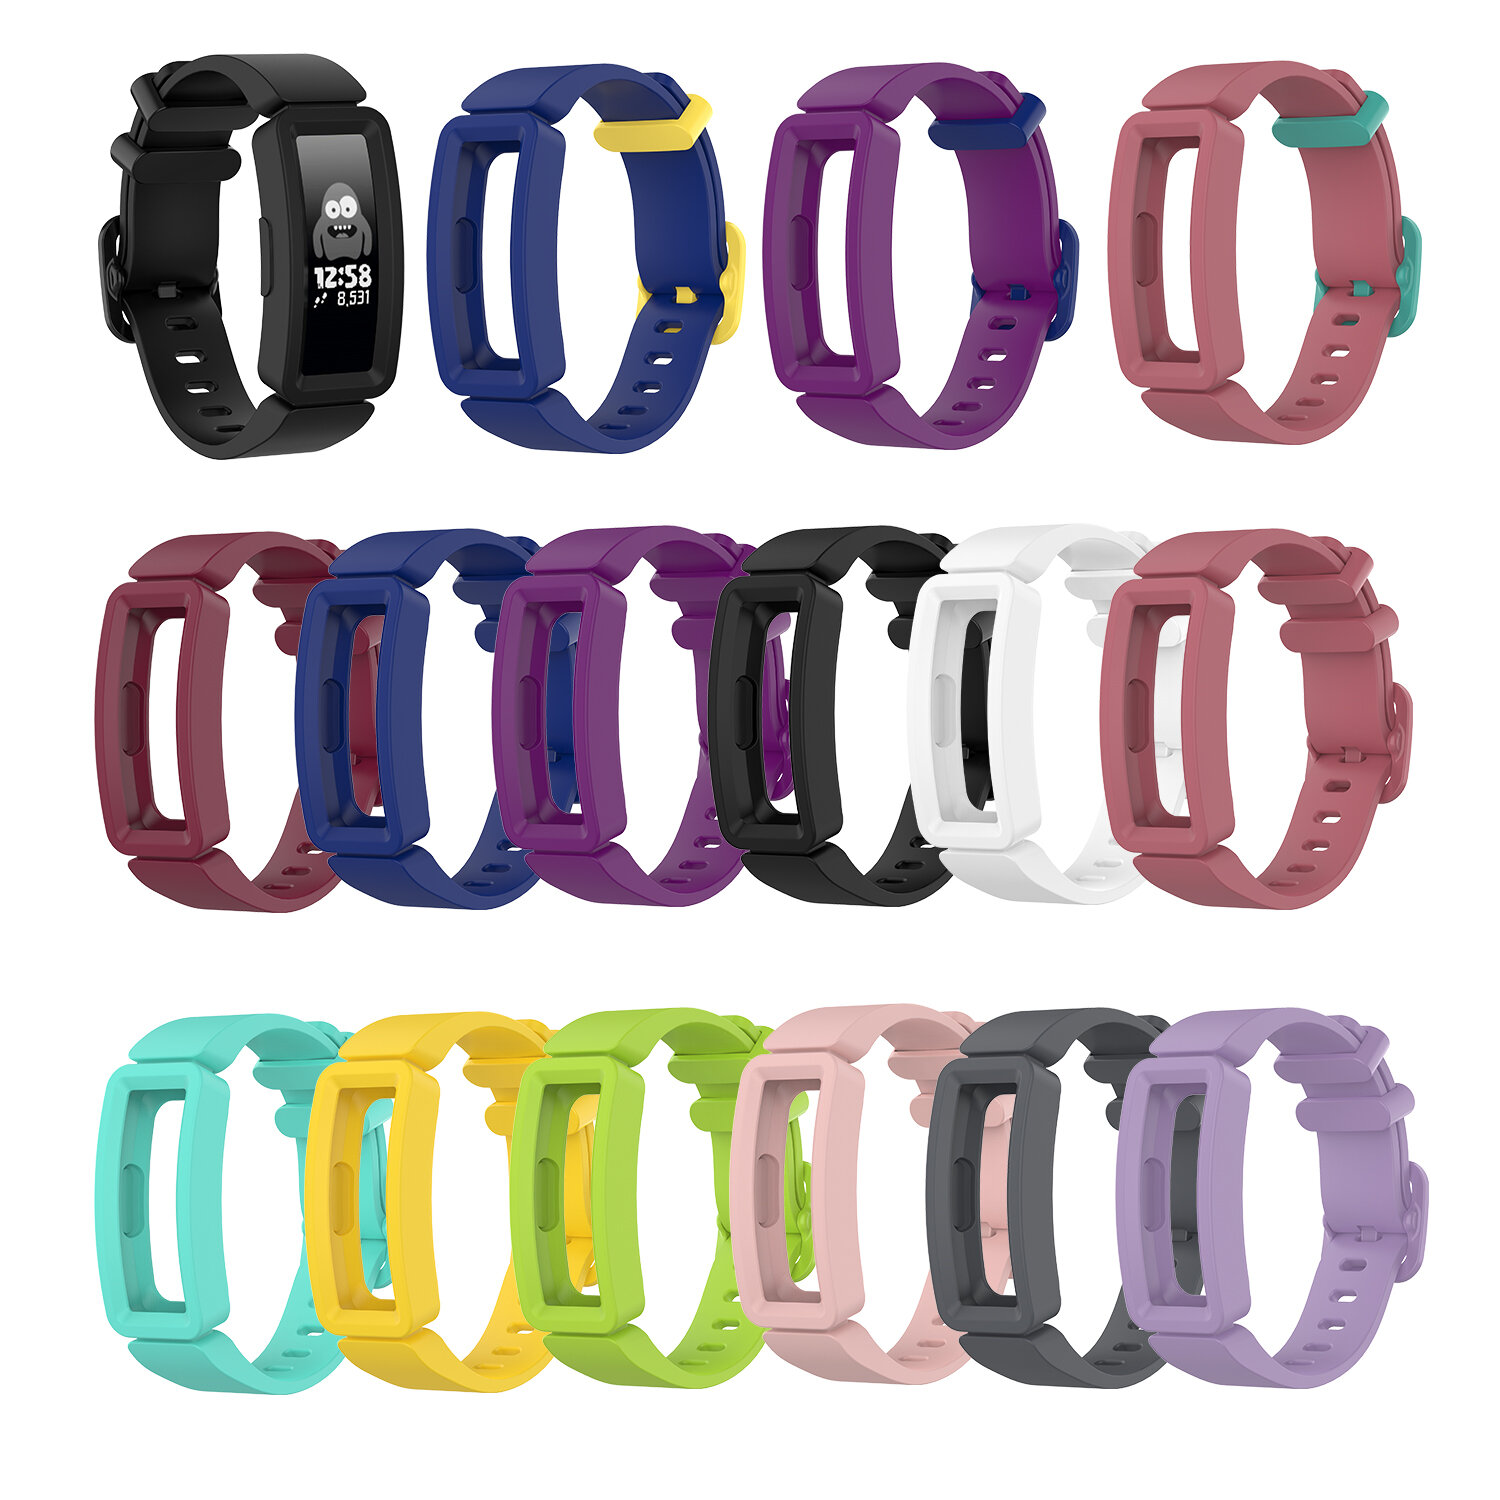 Bakeey Colorful Horlogeband met beschermhoes voor Fitbit Ace 2 Inspire HR Smart Watch